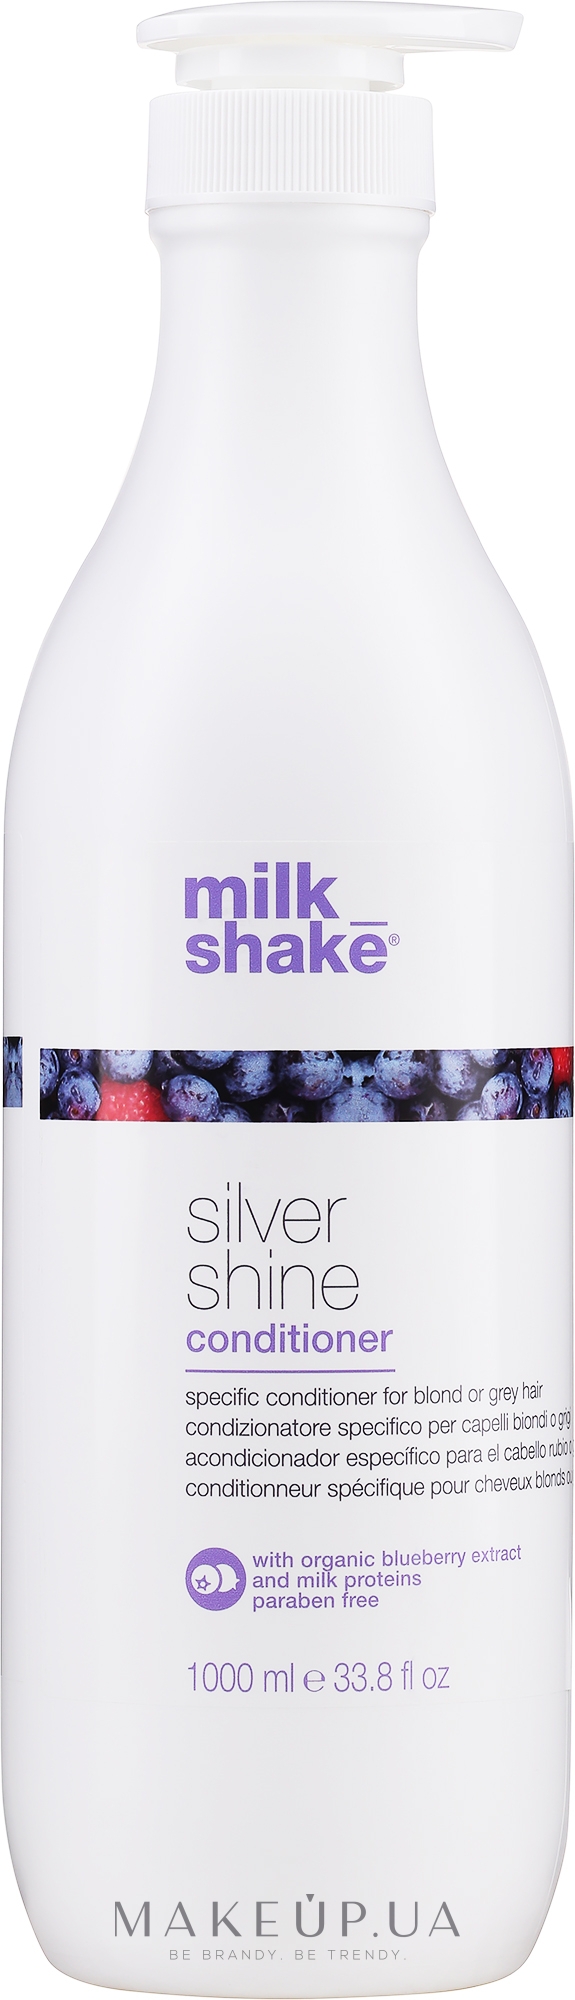 Кондиціонер для освітленого і сивого волосся - Milk Shake Silver Shine Conditioner — фото 1000ml